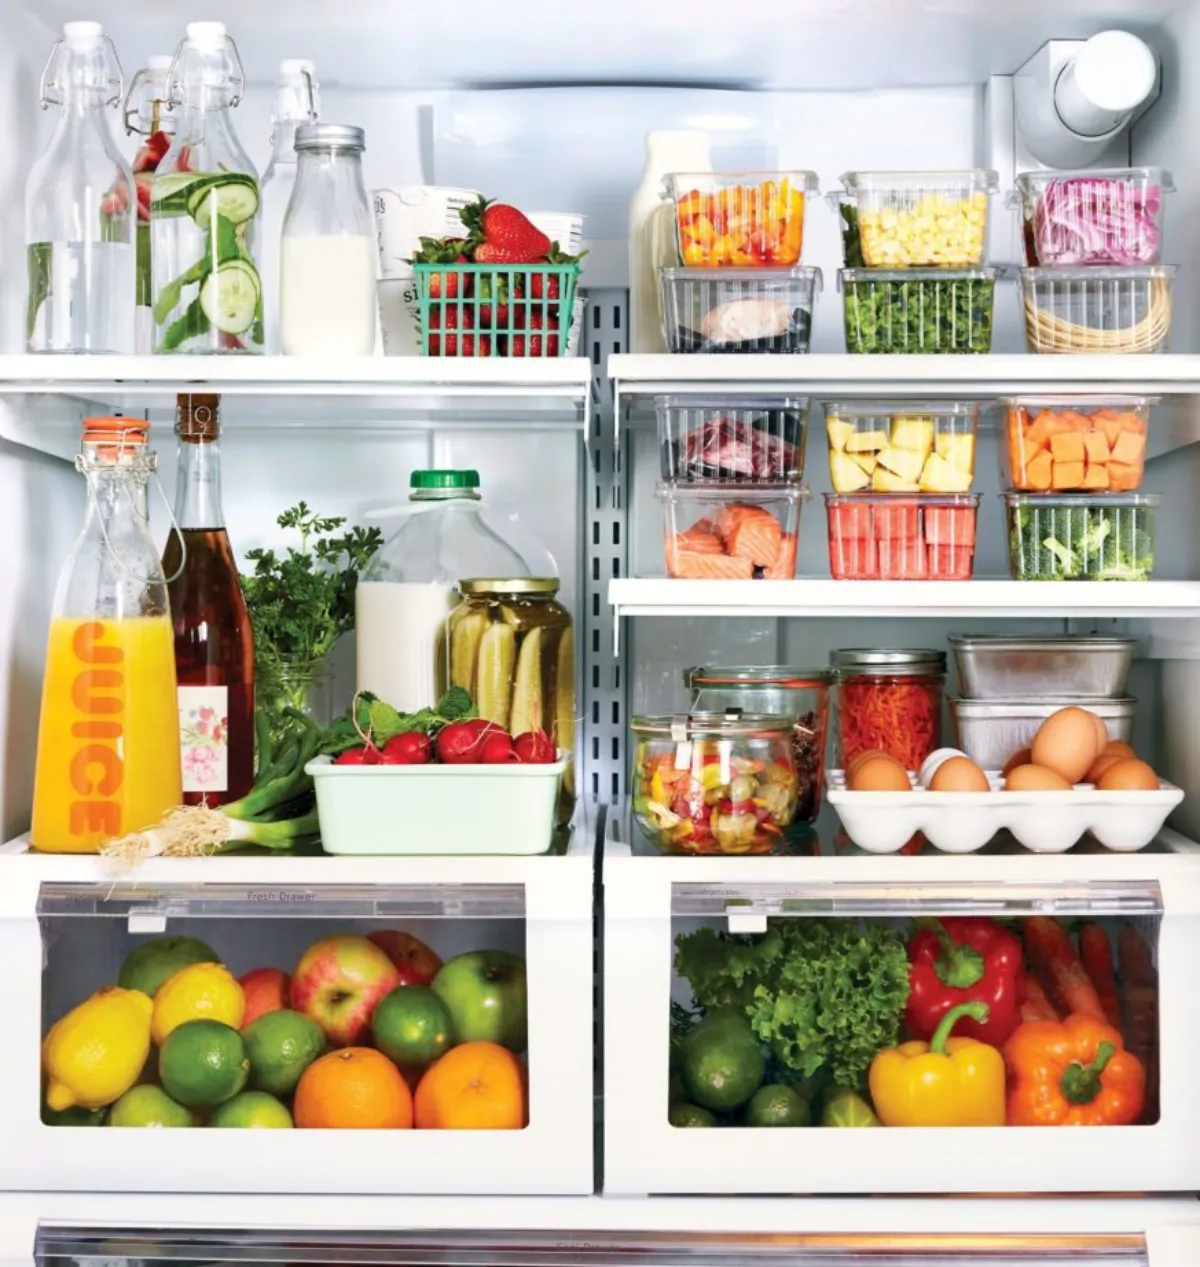 schimmel auf lebensmitteln vermeiden nahrung richtig lagern im kühlschrank